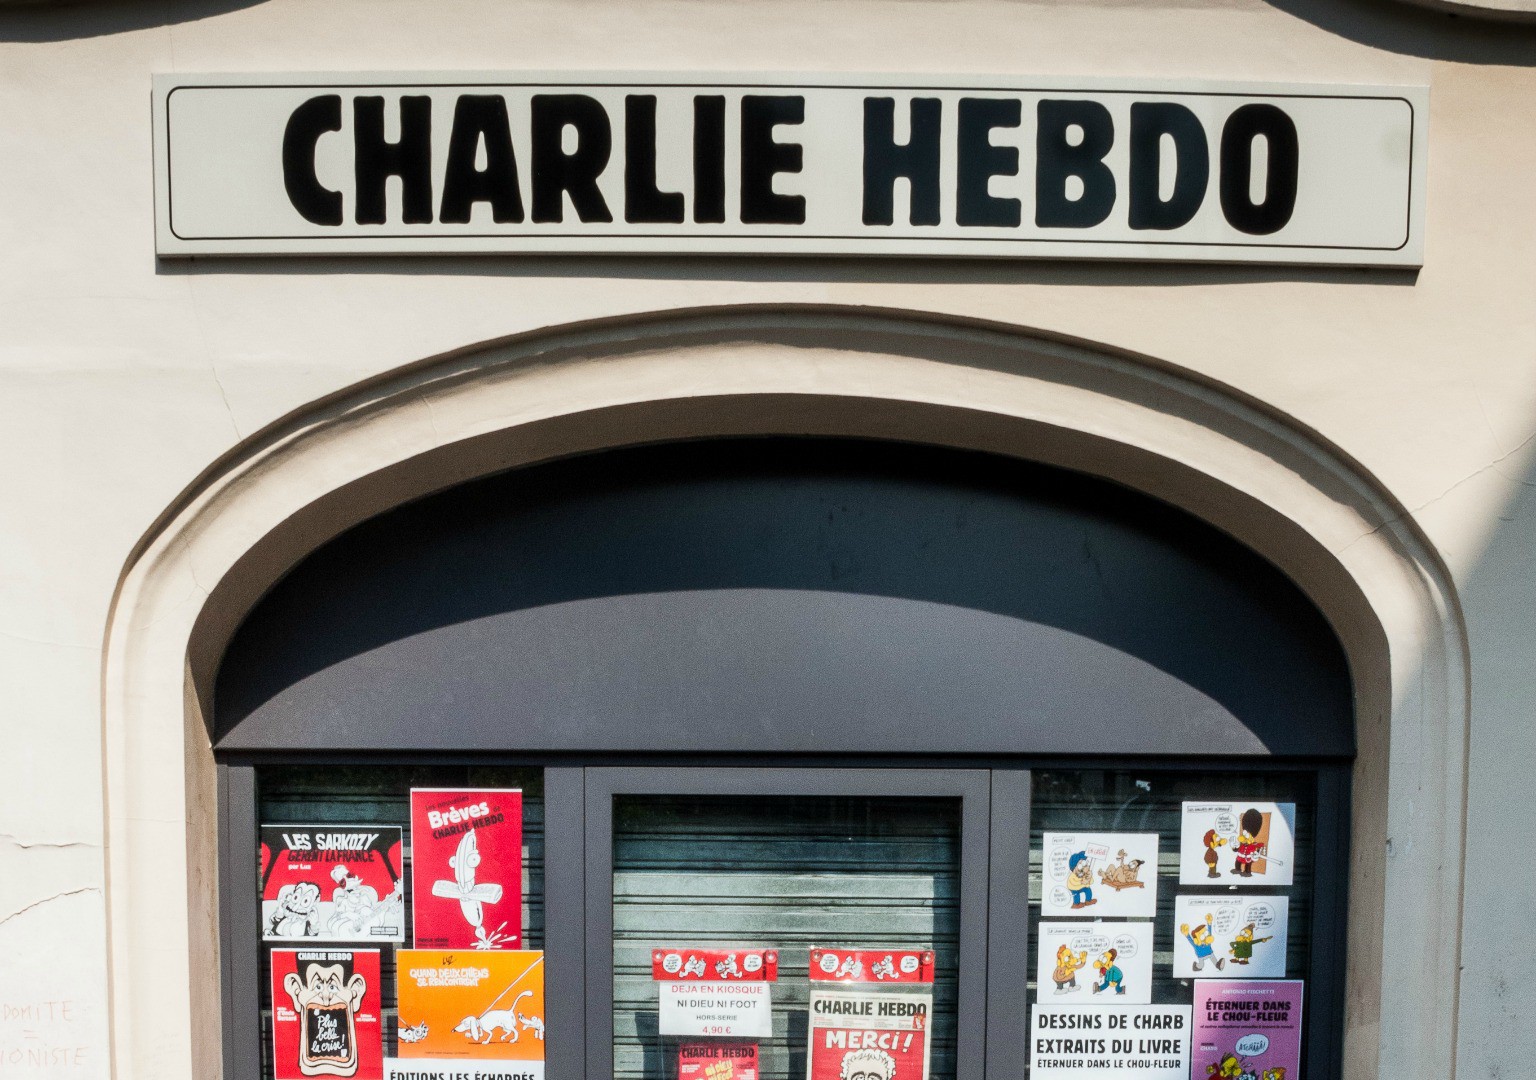 Les locaux de l'hebdomadaire Charlie Hebdo ont été attaqués le 7 janvier 2015  (Photo: Brigitte Djajasamita/Flickr/CC BY-NC-ND 2.0)